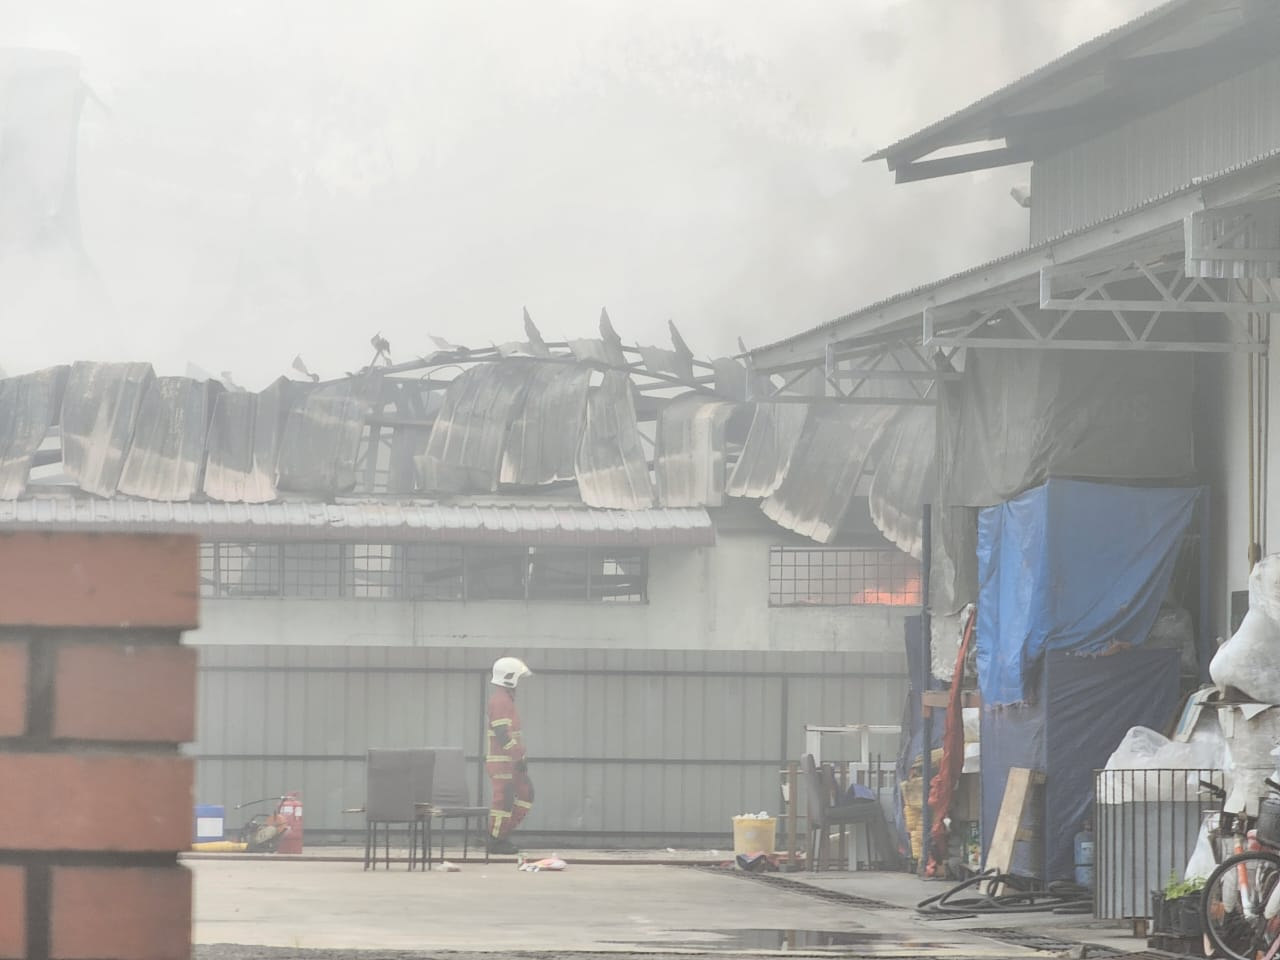 Aik cheong warehouse in melaka completely burnt